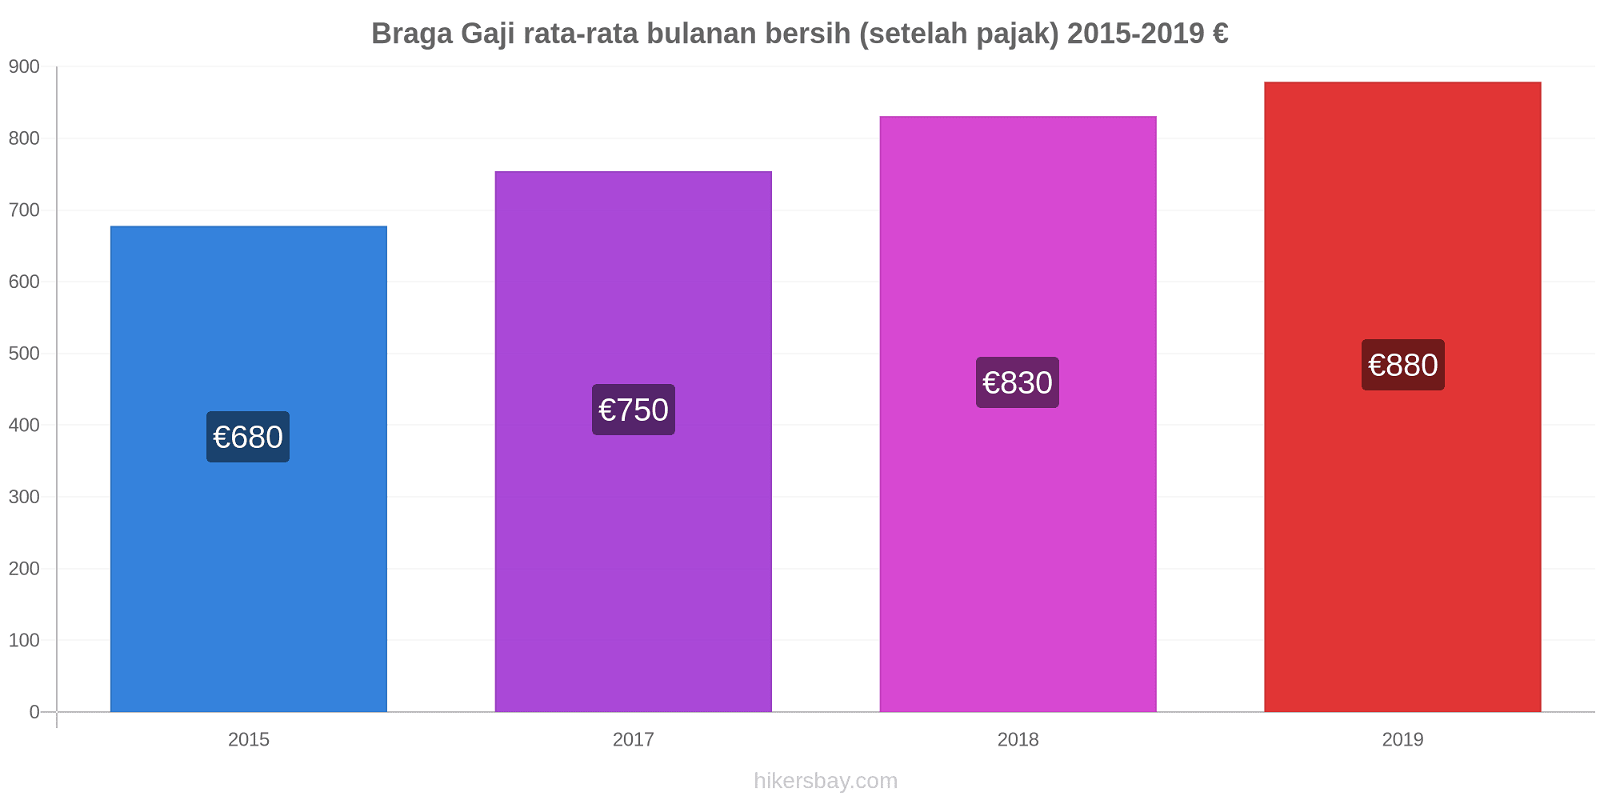 Braga perubahan harga Gaji rata-rata bulanan bersih (setelah pajak) hikersbay.com